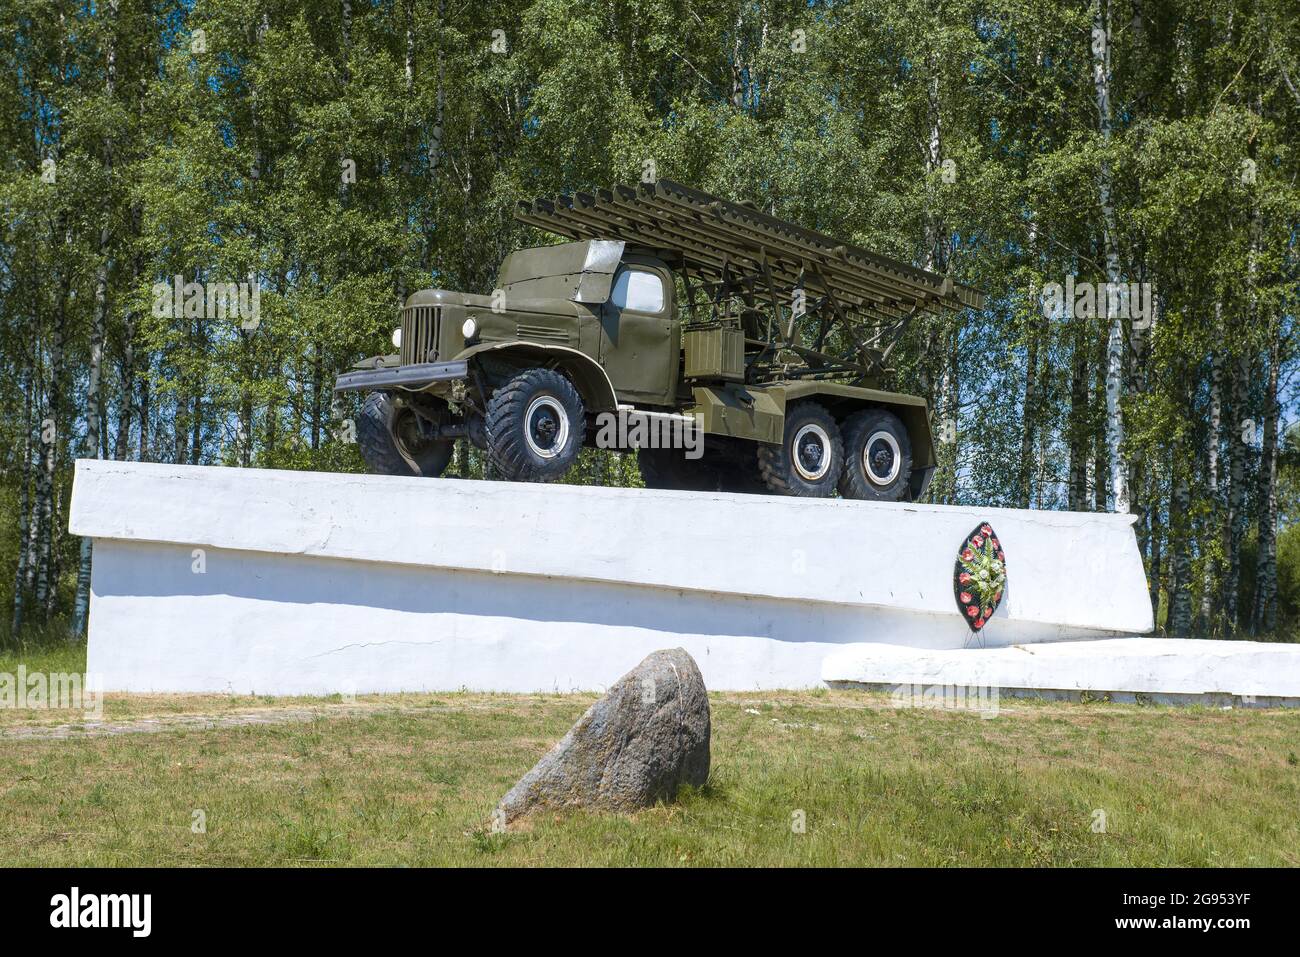 VELIZH, RUSIA - 04 DE JULIO de 2021: Monumento al Katyusha - lanzacohetes de guardia en un día soleado de julio Foto de stock